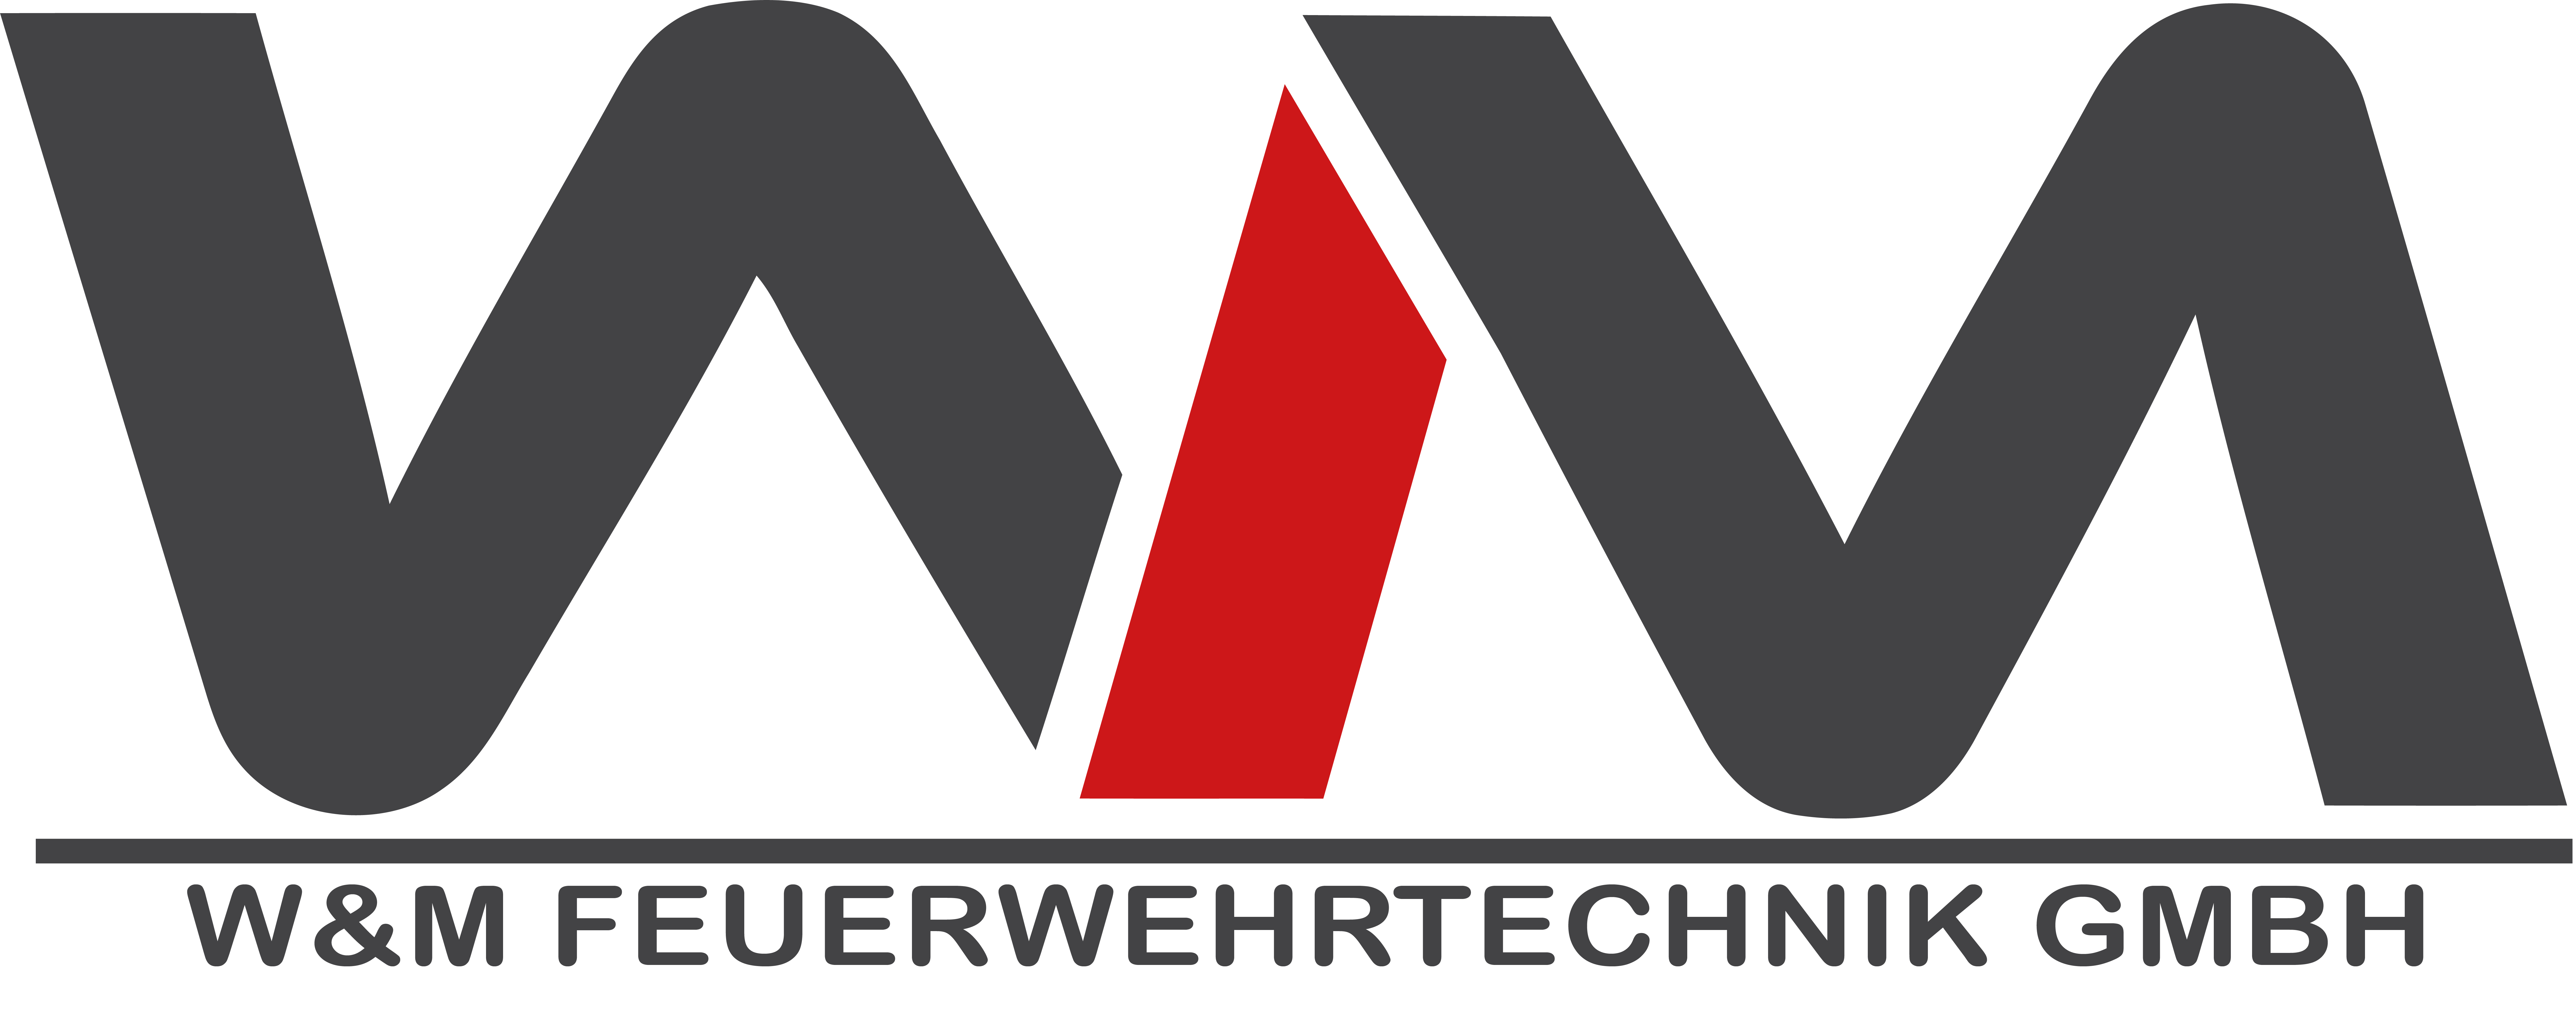 W&M Feuerwehrtechnik GmbH